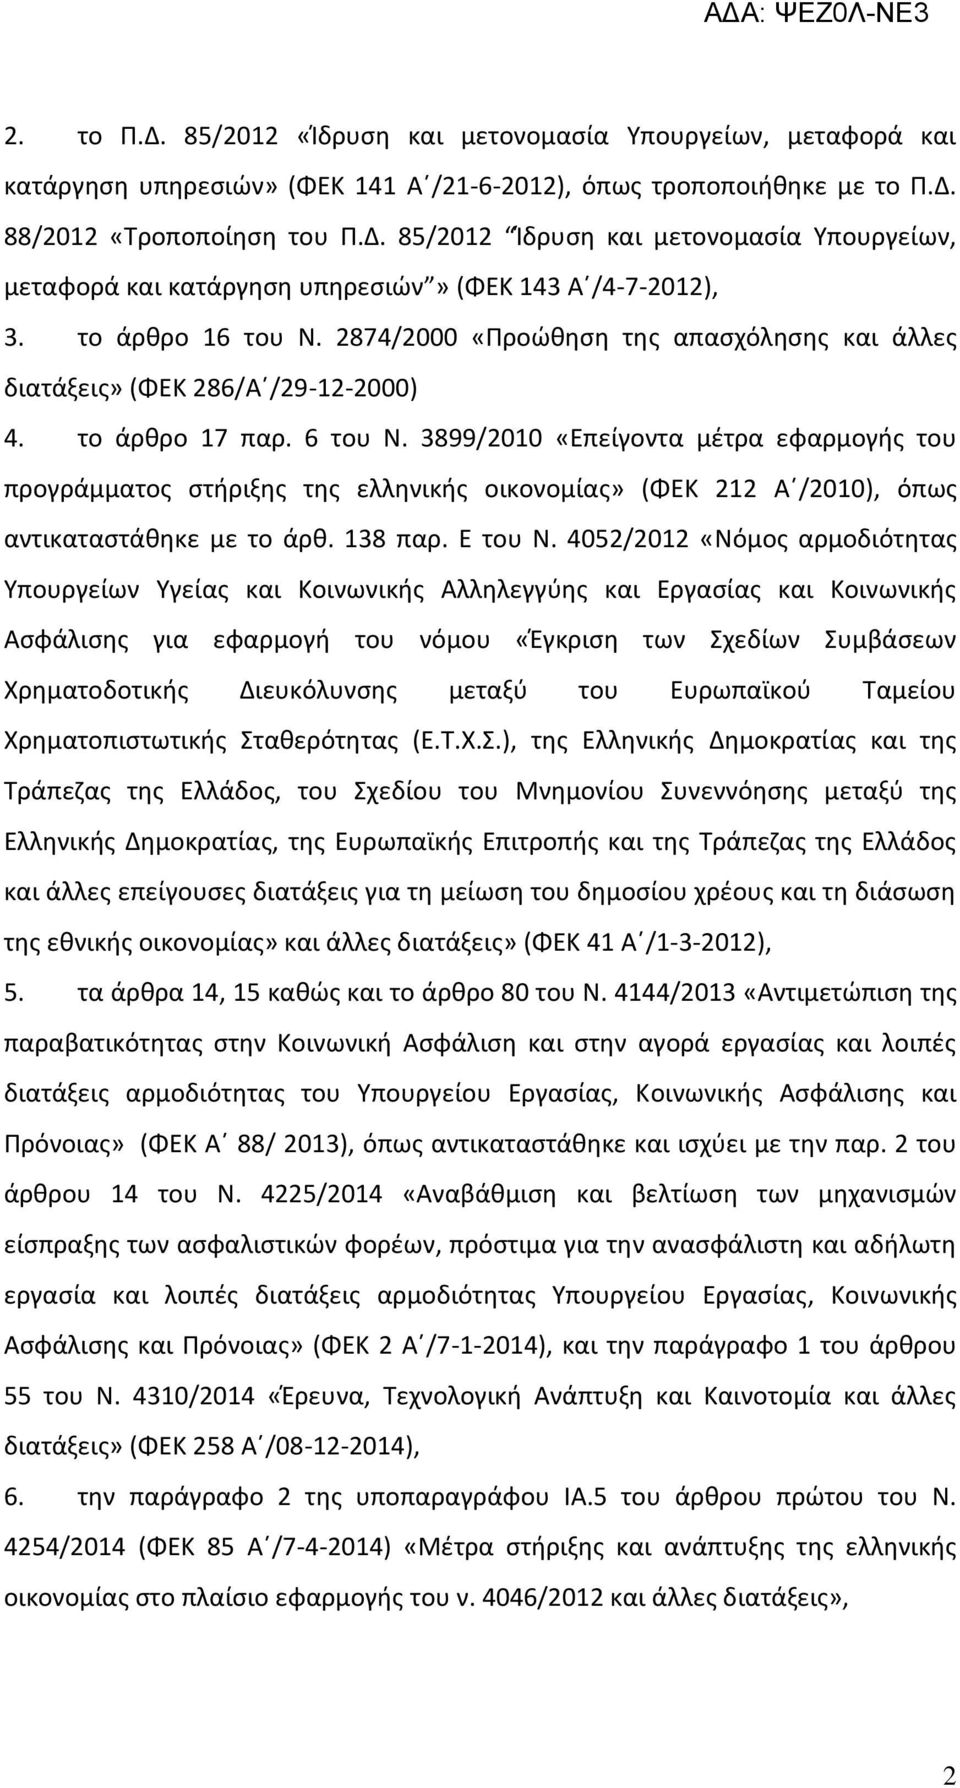 3899/2010 «Επείγοντα μέτρα εφαρμογής του προγράμματος στήριξης της ελληνικής οικονομίας» (ΦΕΚ 212 Α /2010), όπως αντικαταστάθηκε με το άρθ. 138 παρ. Ε του Ν.